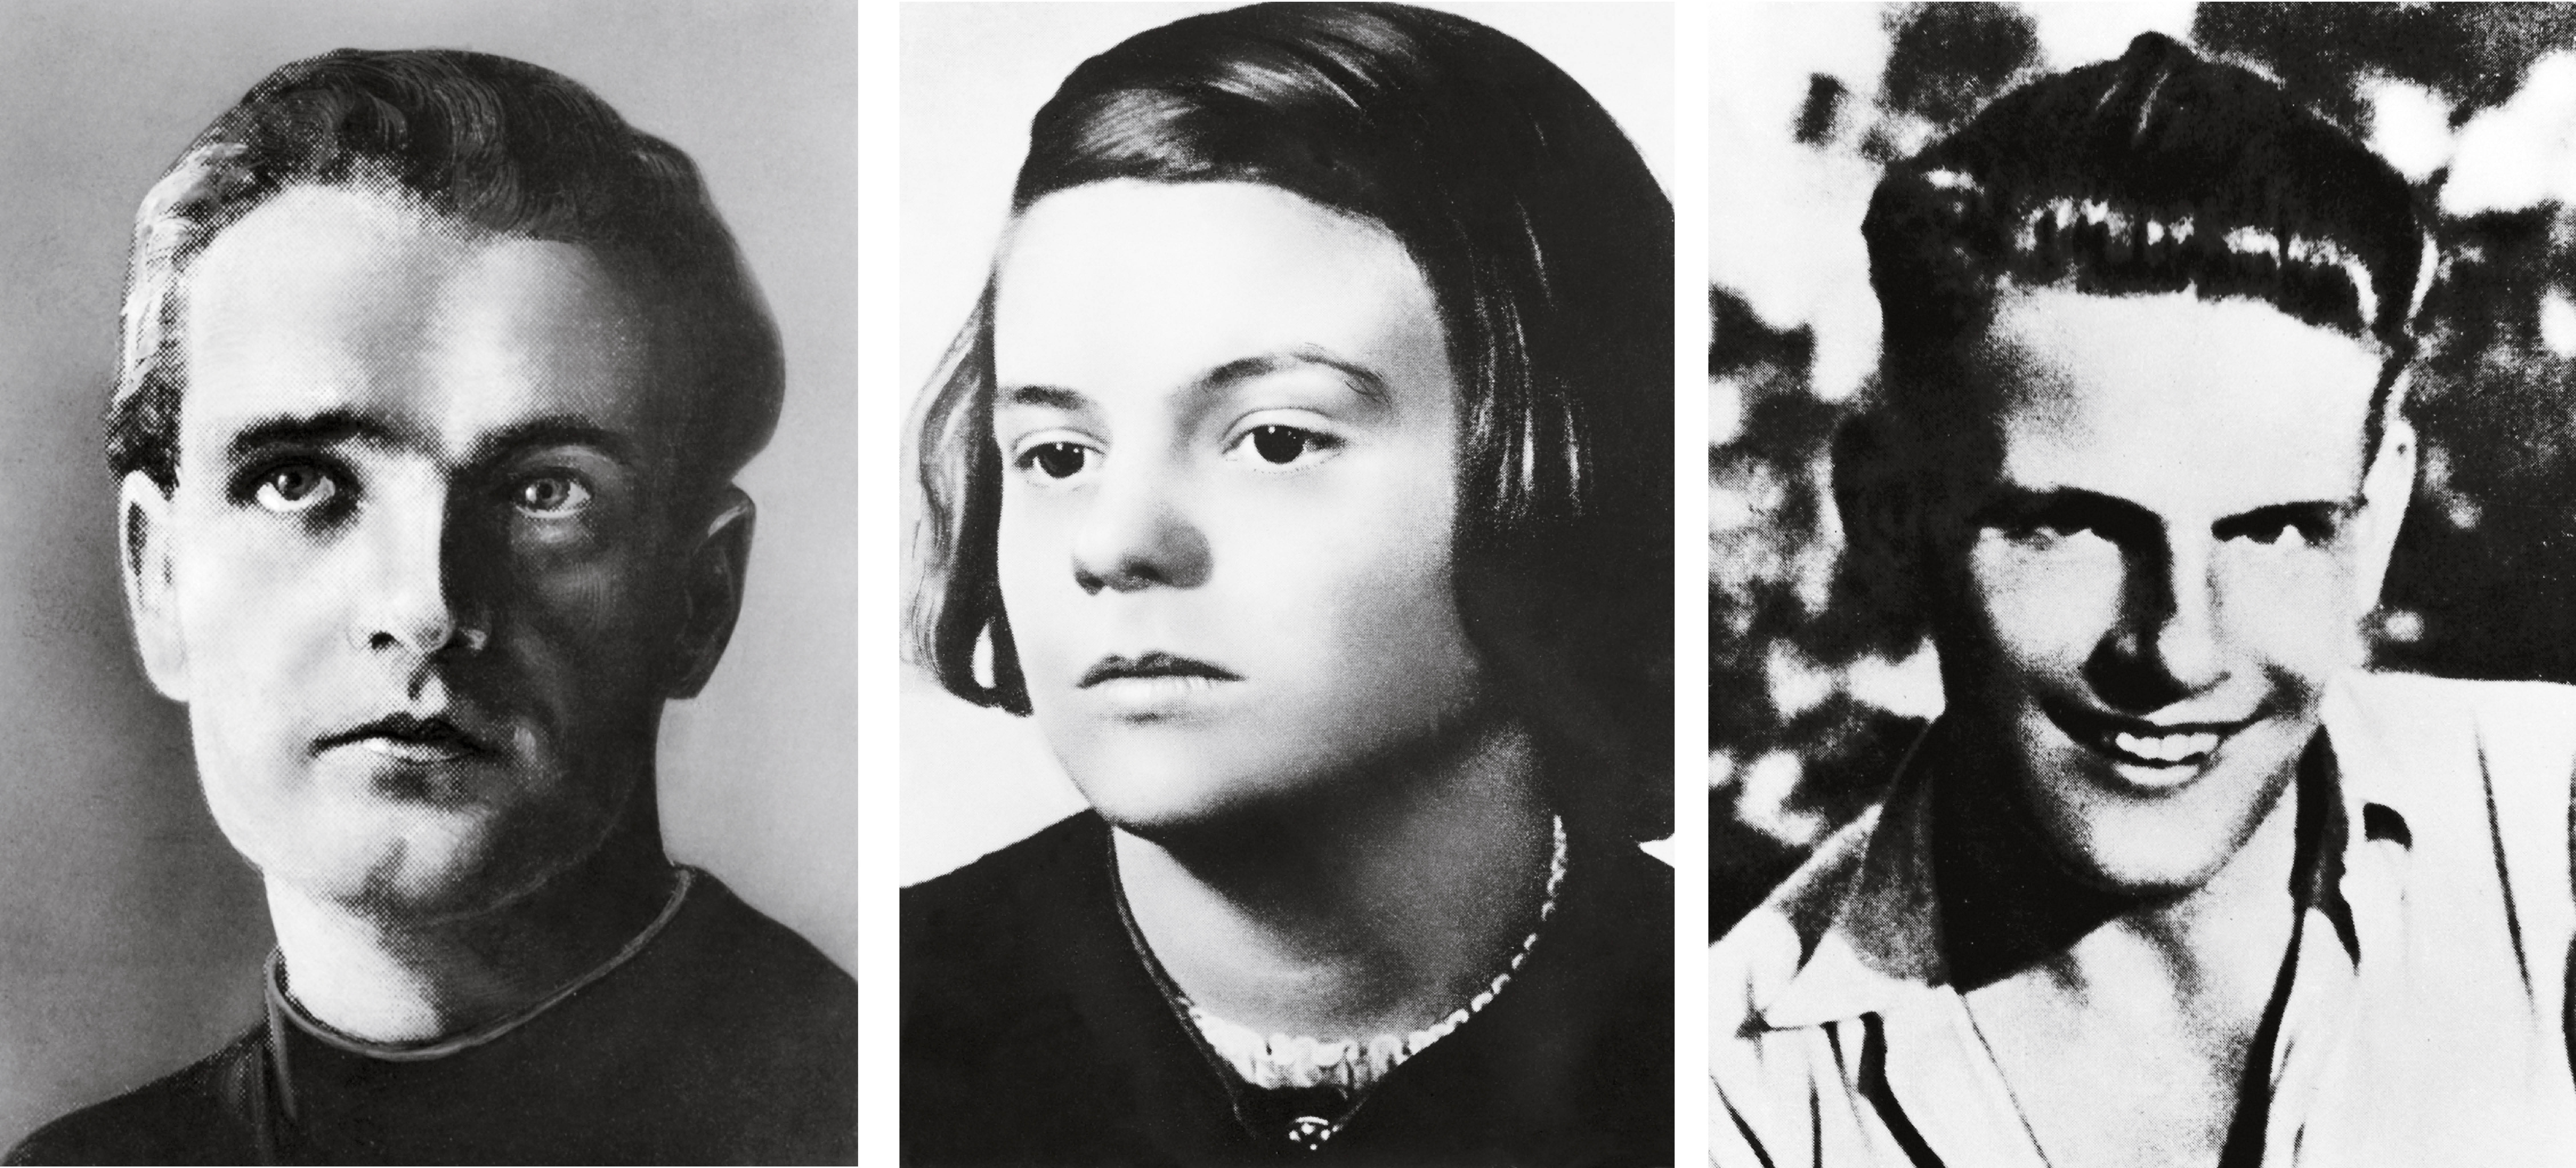 Członkowie grupy Biała Róża: rodzeństwo Hans i Sophie Schollowie oraz Christoph Probst. Zostali skazani na karę śmierci, wyrok wykonano 22 lutego 1943 r. w Monachium